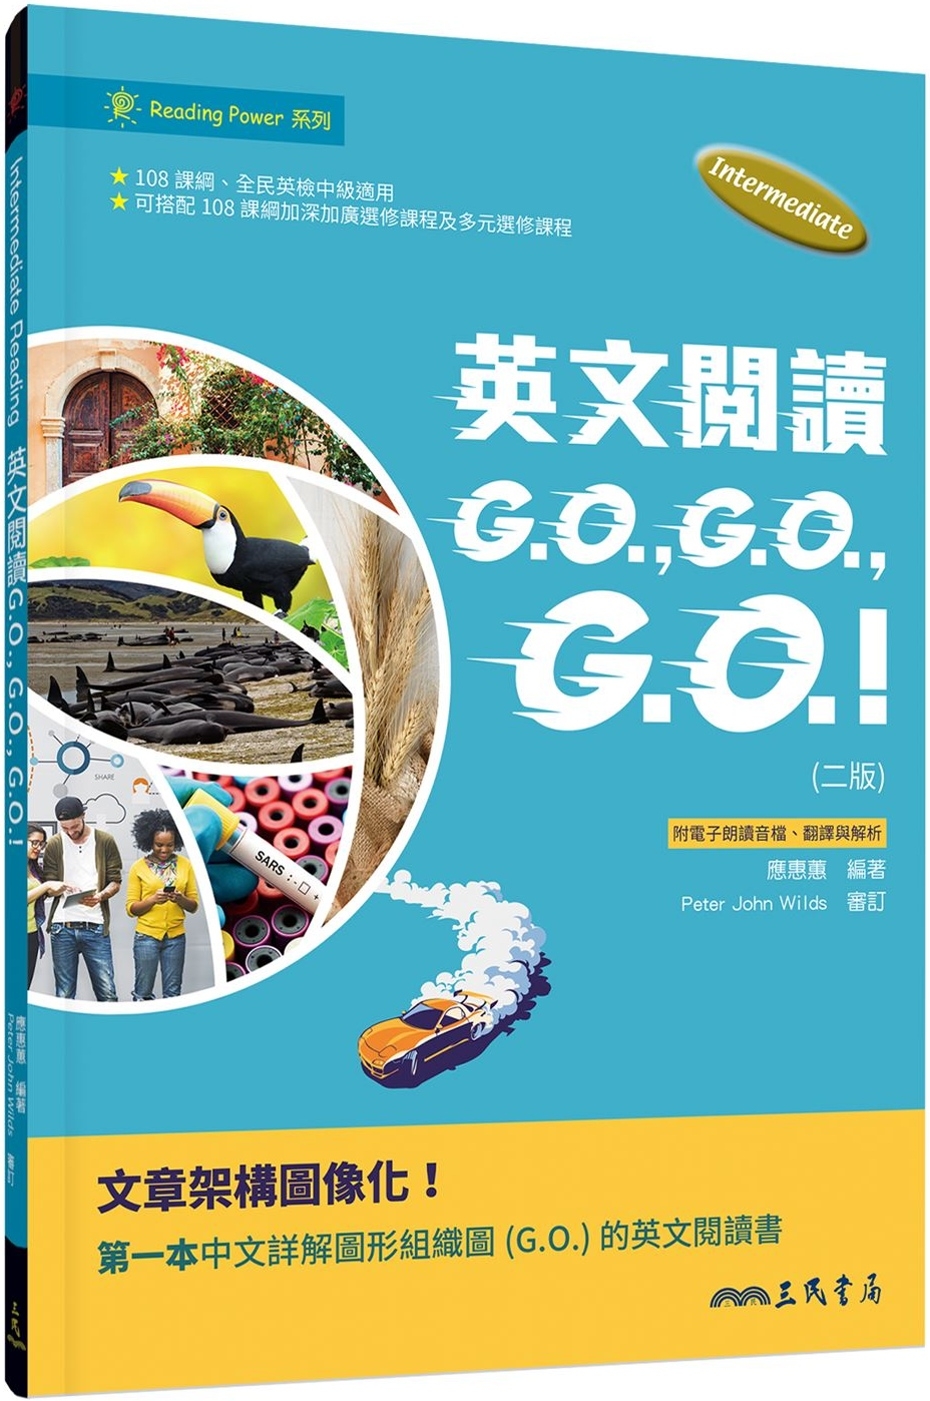 英文閱讀GO, GO, GO!(二版)(附解析夾冊)